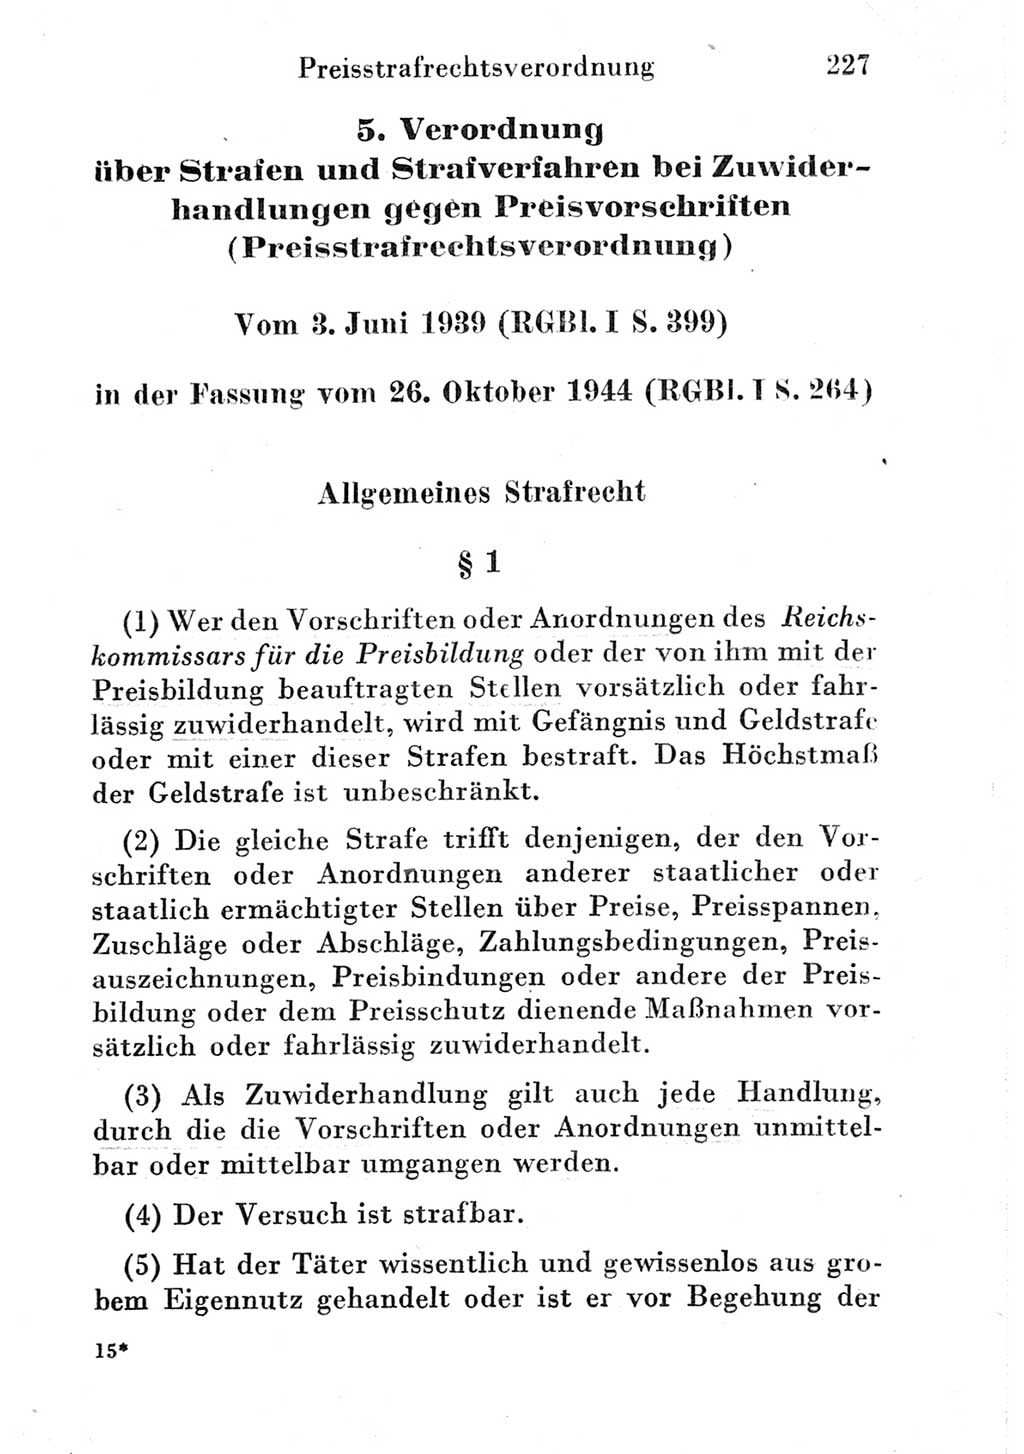 Strafgesetzbuch (StGB) und andere Strafgesetze [Deutsche Demokratische Republik (DDR)] 1951, Seite 227 (StGB Strafges. DDR 1951, S. 227)